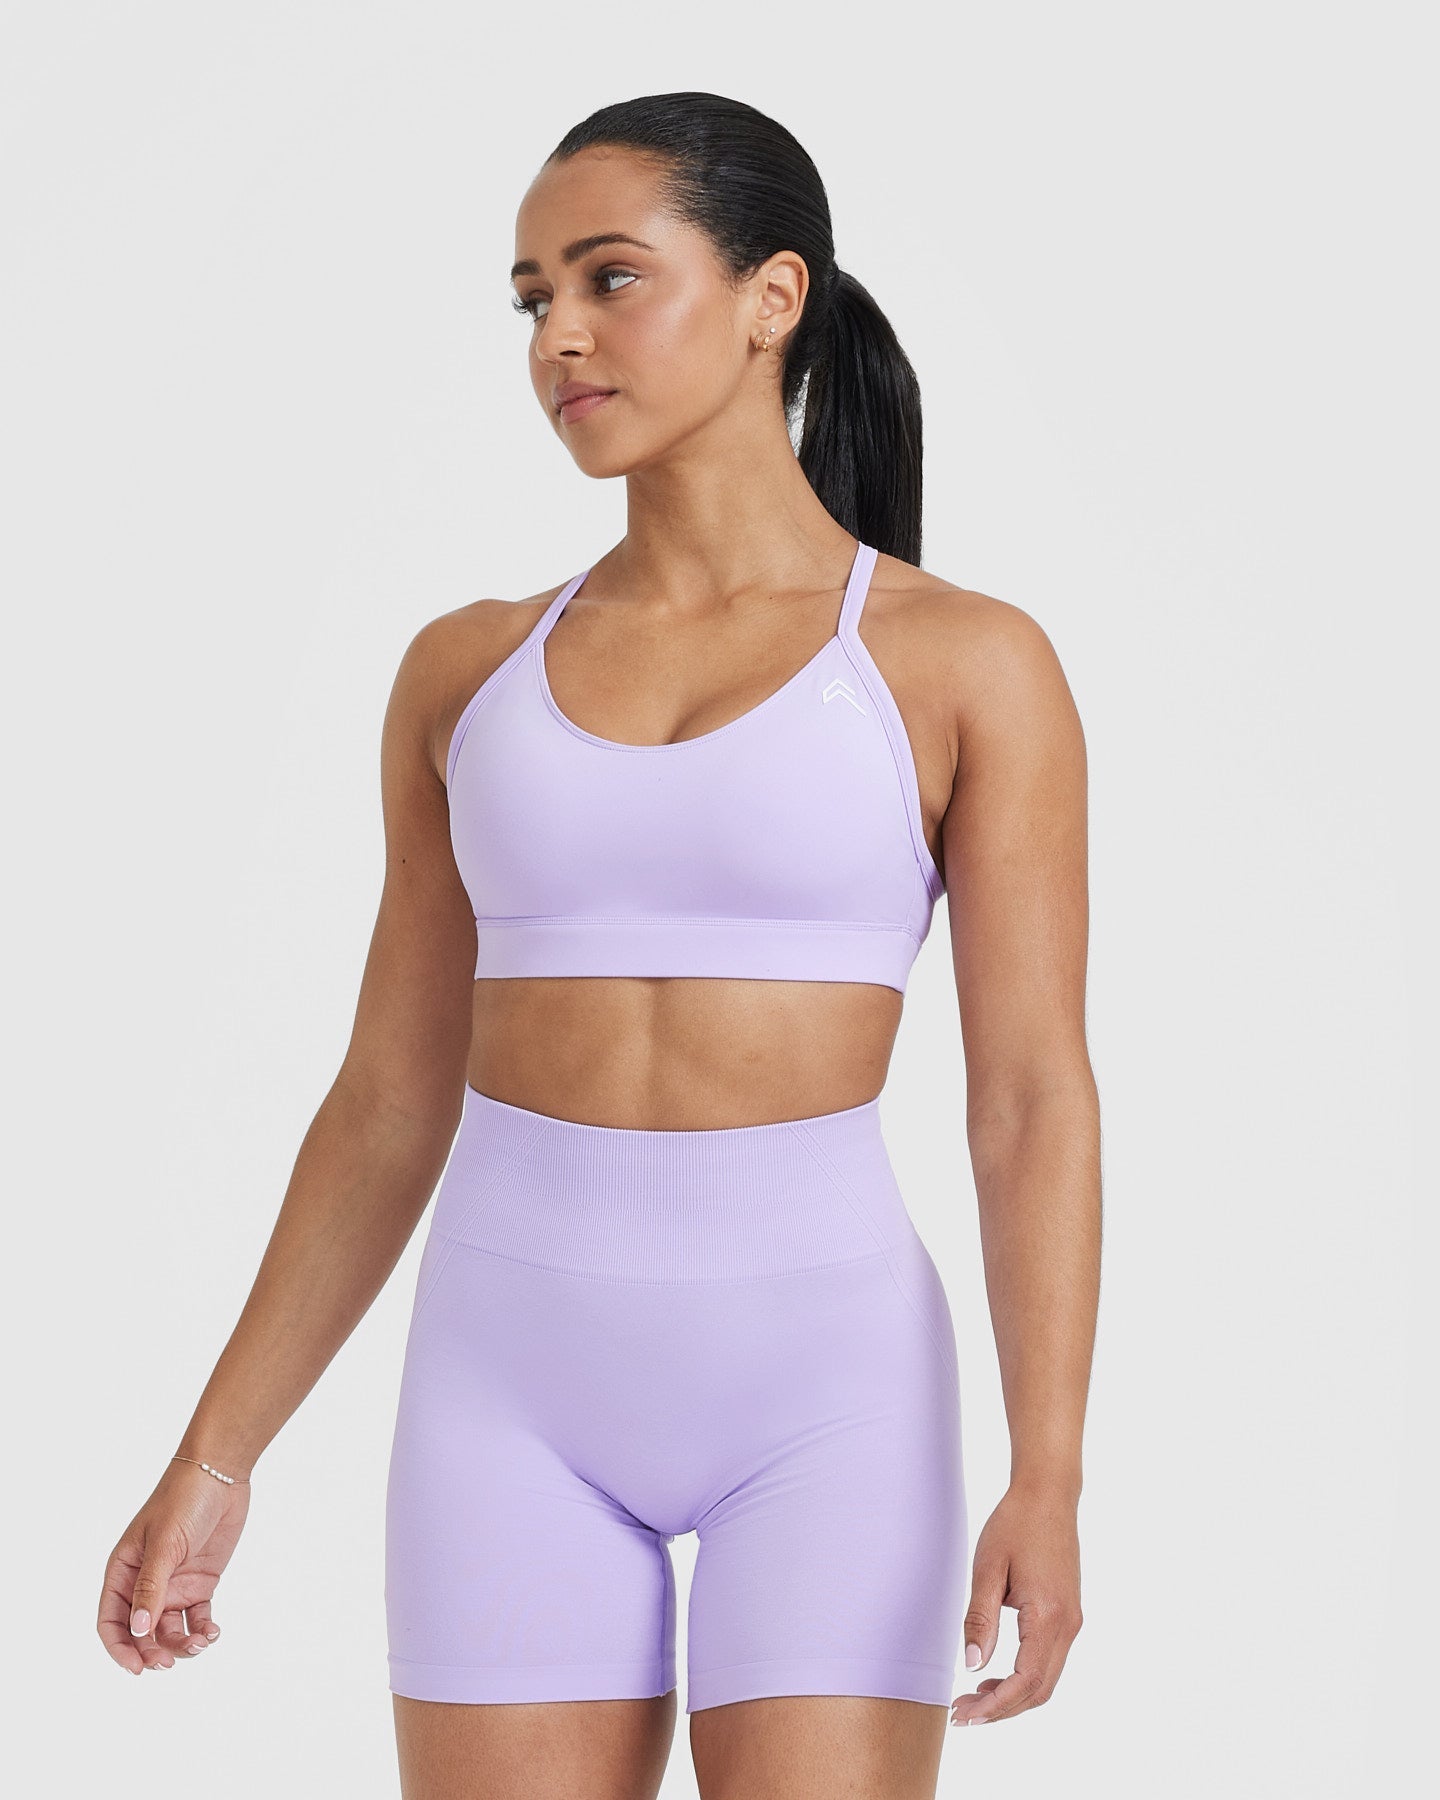 Stretchy sports bra - purple